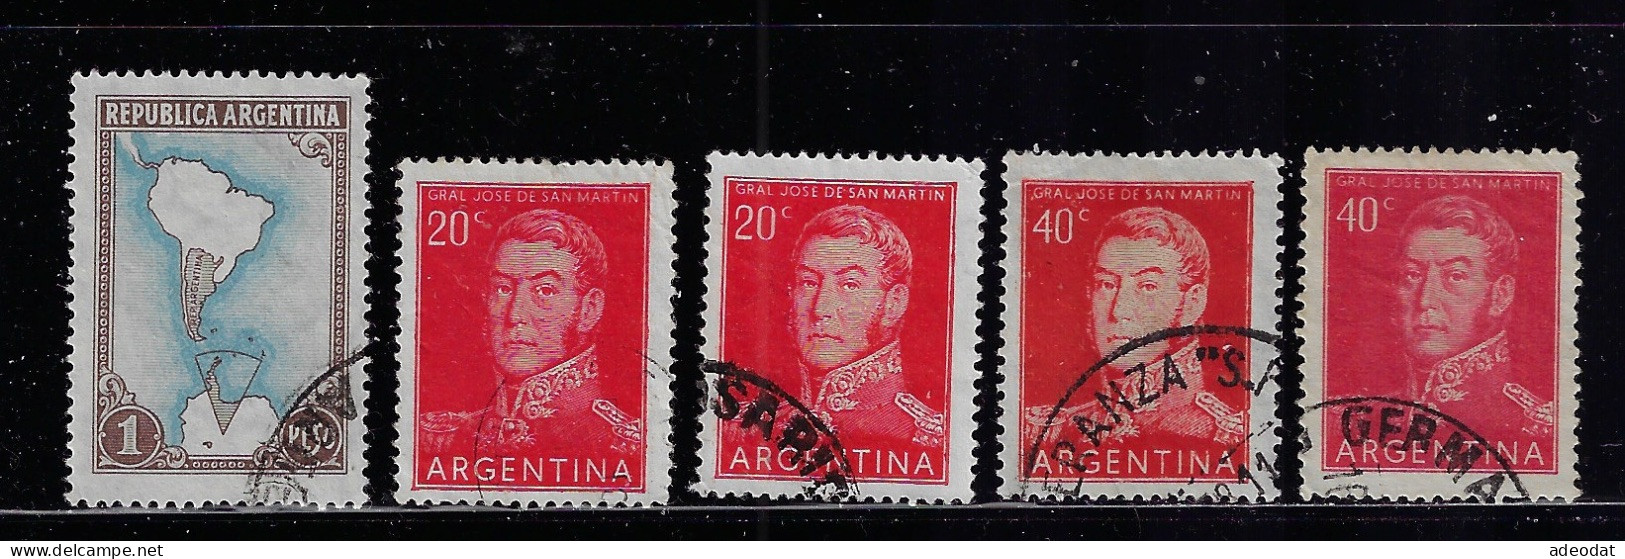 ARGENTINA  1951-54  SCOTT #594,628-631  USED - Gebraucht